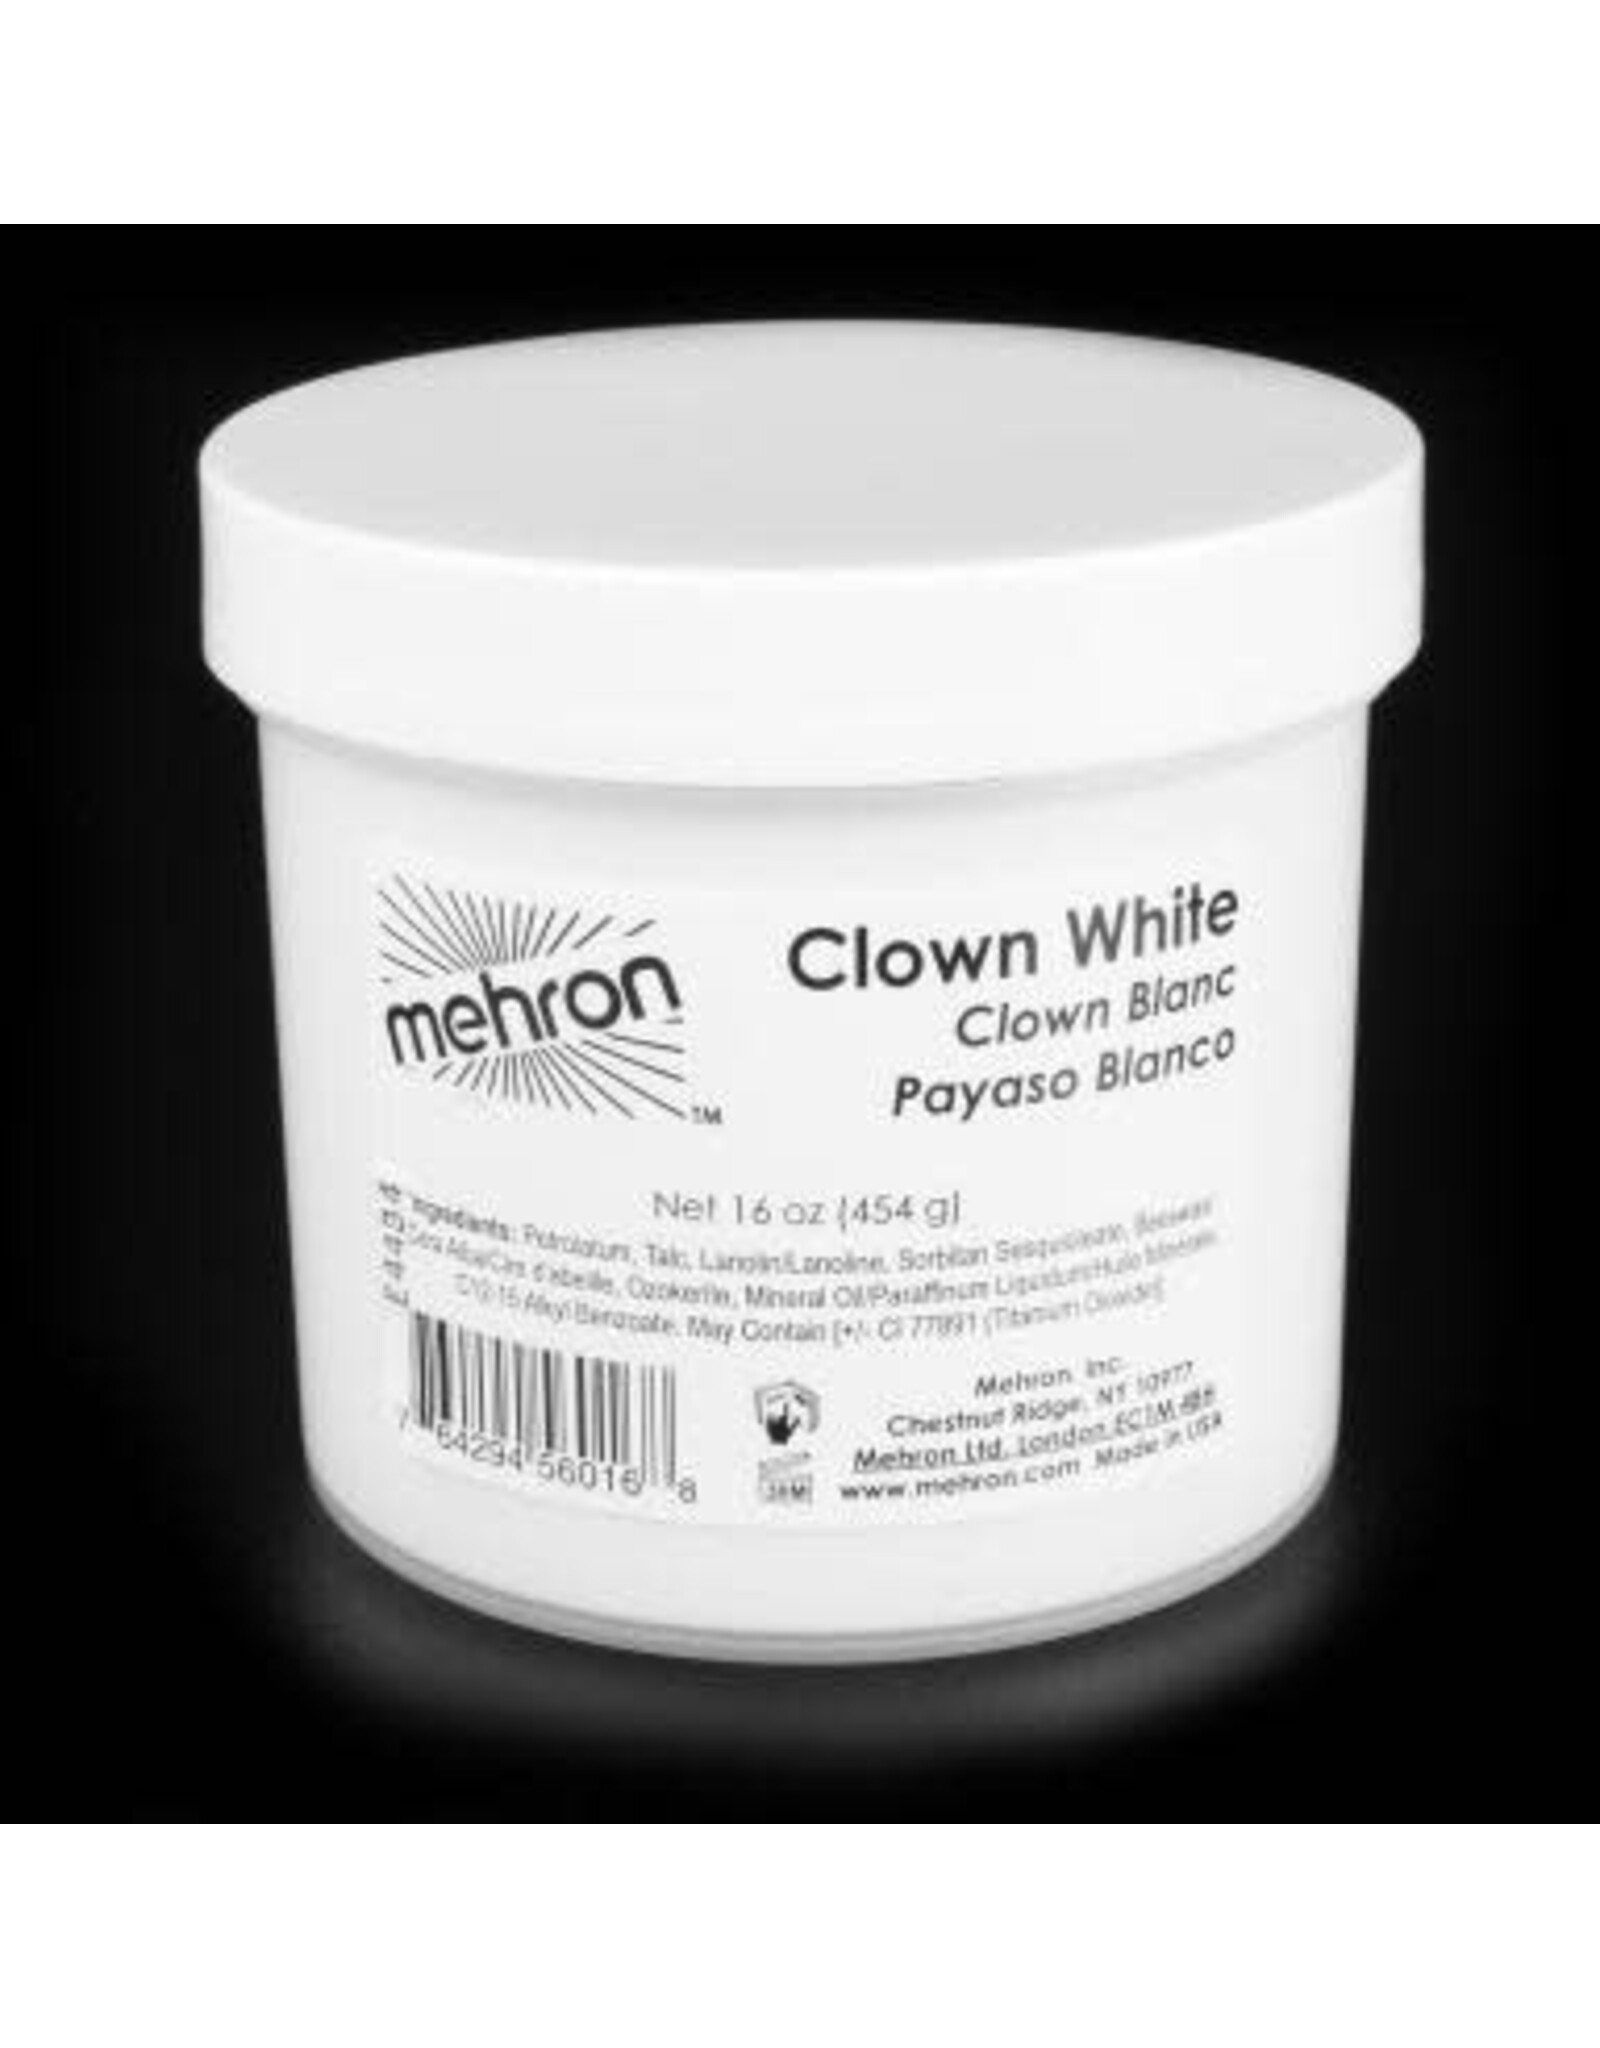 Mehron Clown White